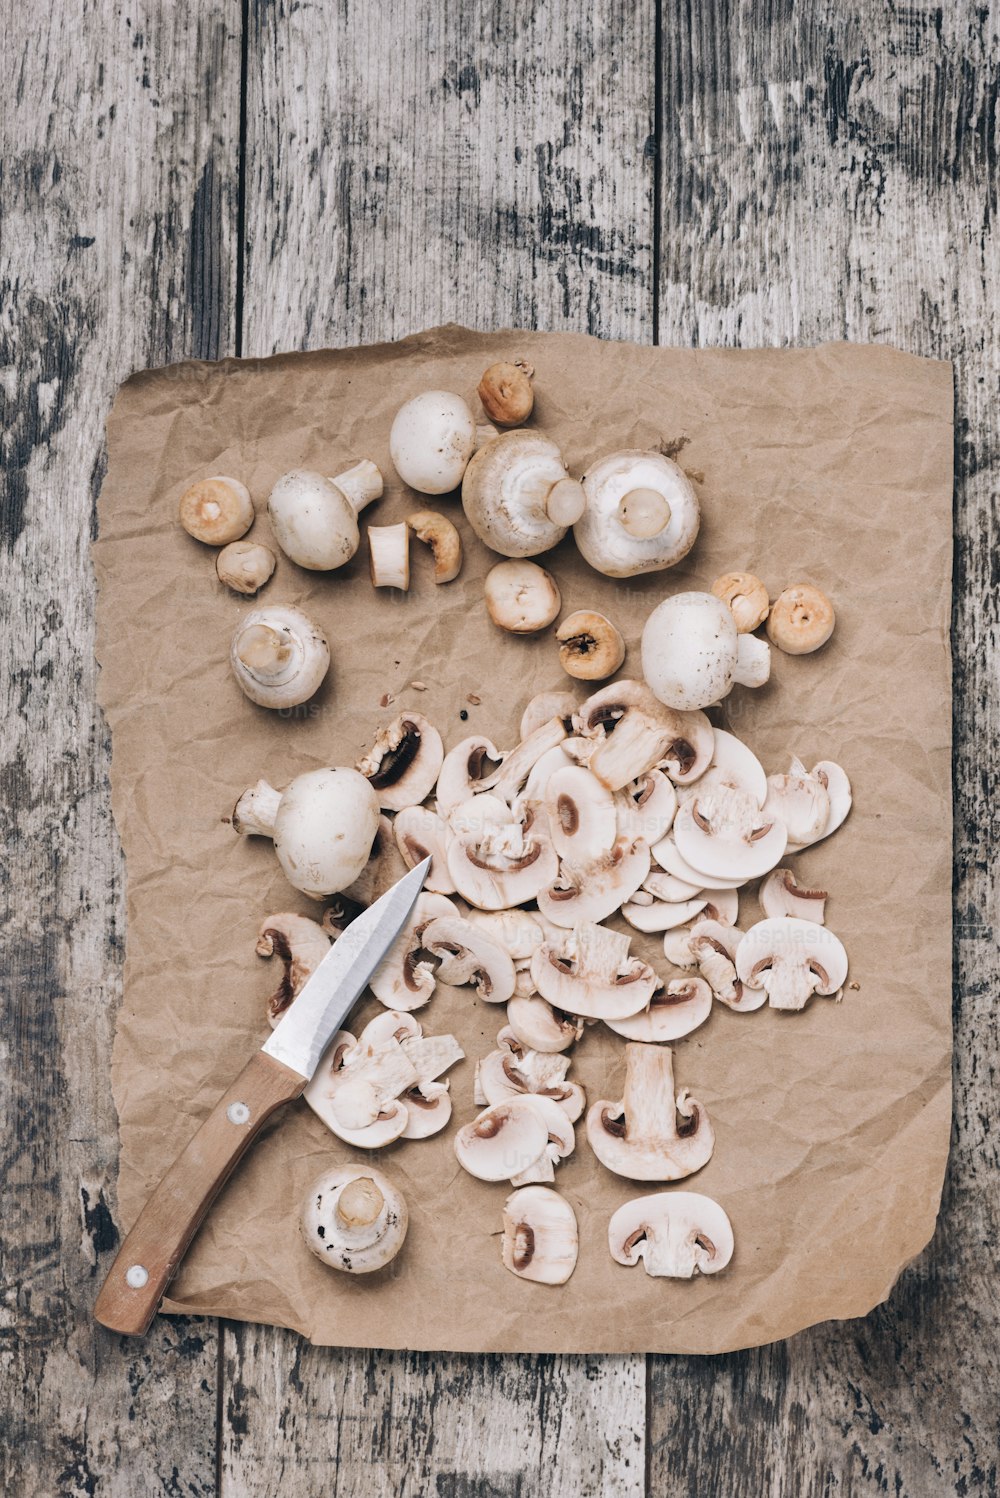 Funghi champignon freschi interi e affettati fotografati dall'alto su un vecchio tavolo di legno.